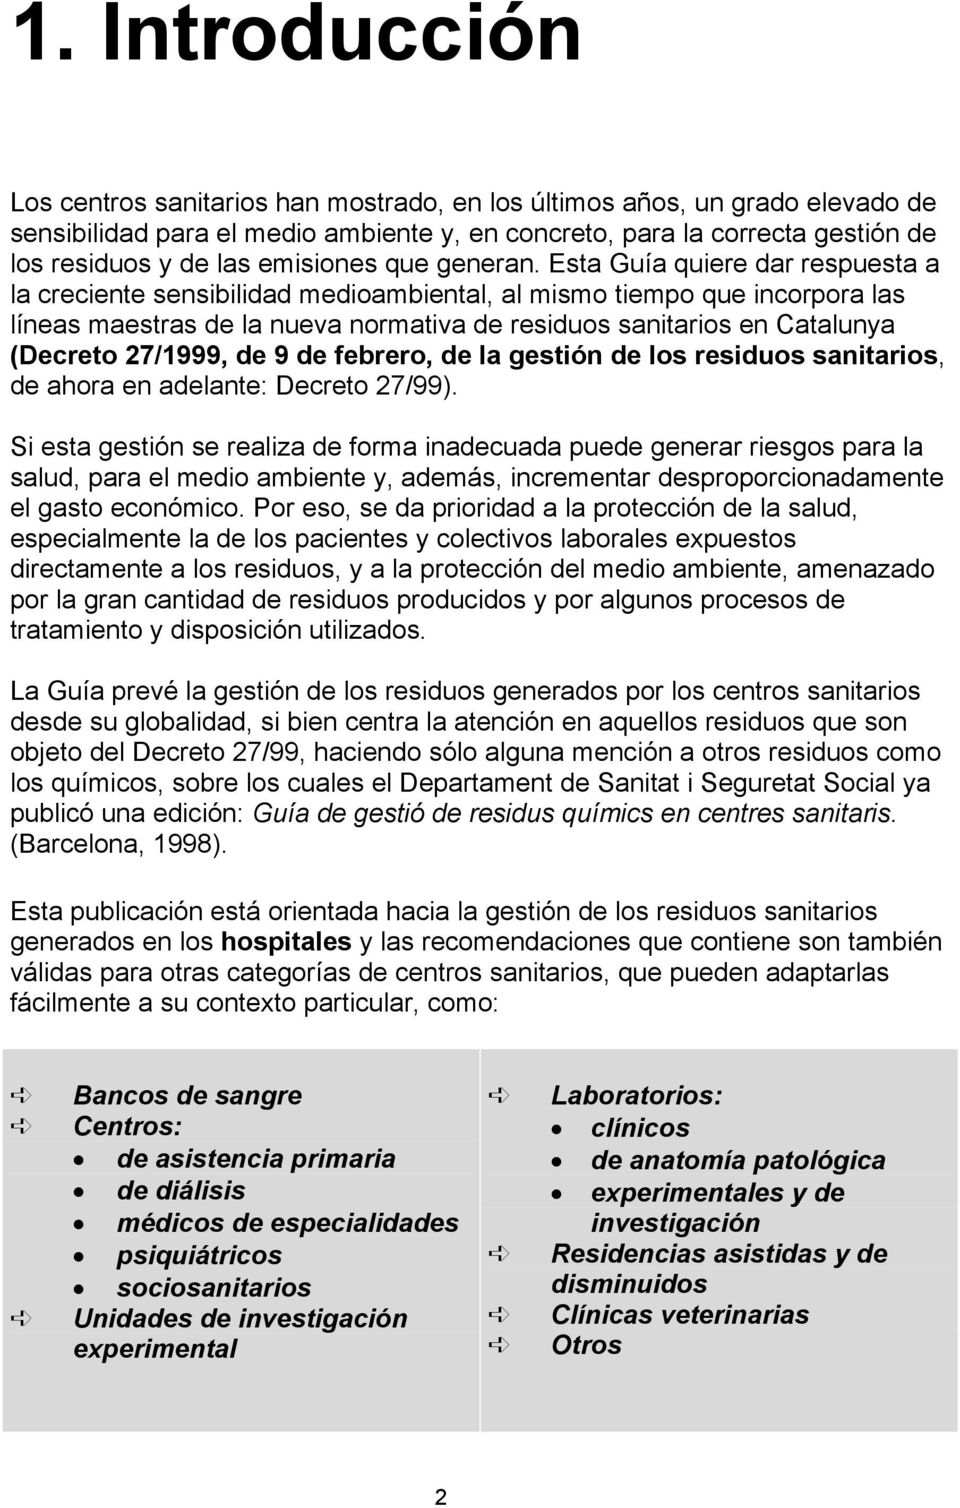 Esta Guía quiere dar respuesta a la creciente sensibilidad medioambiental, al mismo tiempo que incorpora las líneas maestras de la nueva normativa de residuos sanitarios en Catalunya (Decreto